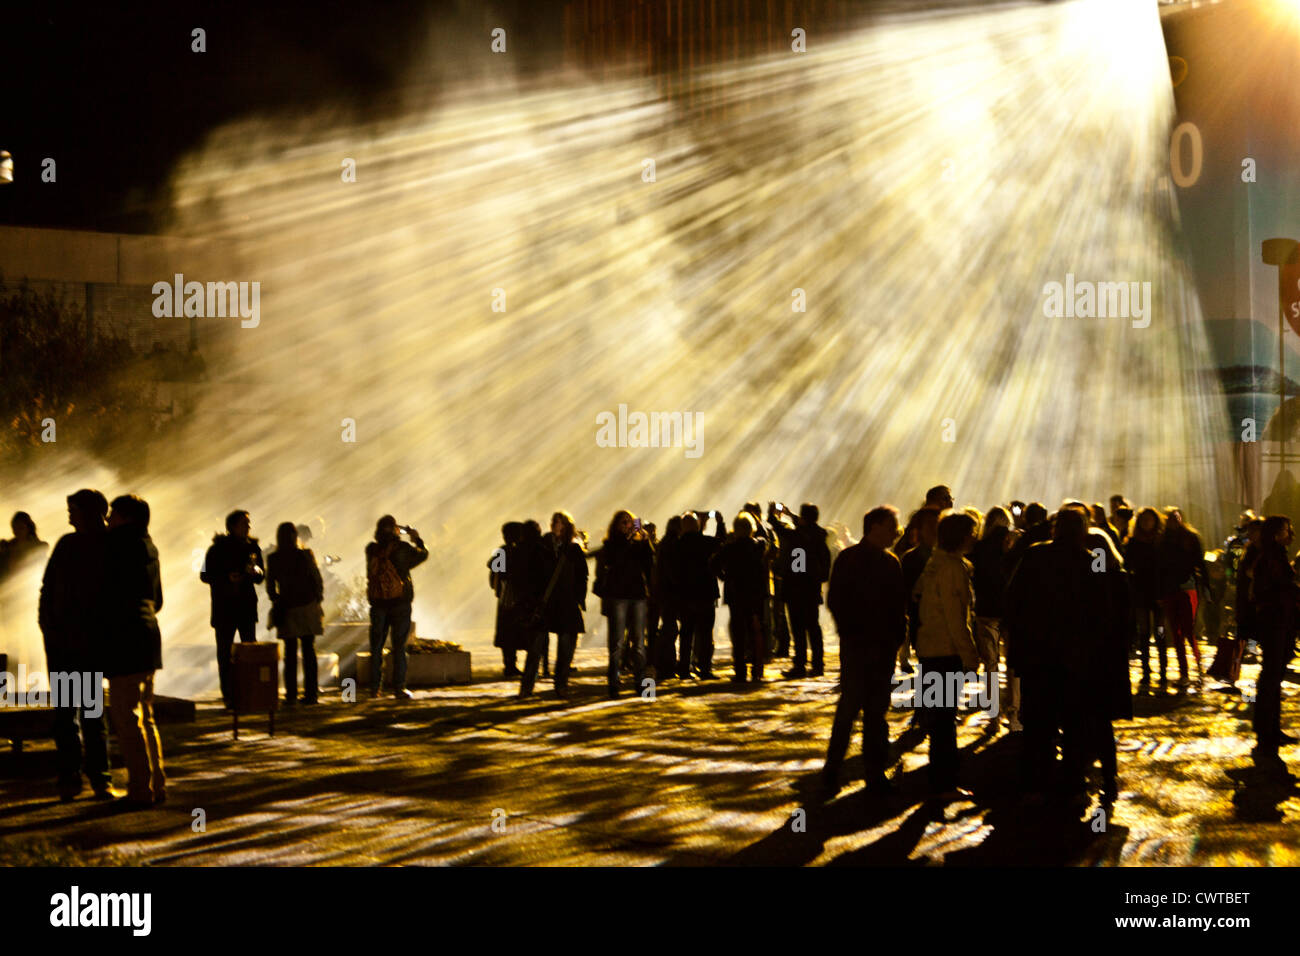 La gente en la Luminale, Frankfurt am Main, Alemania Foto de stock